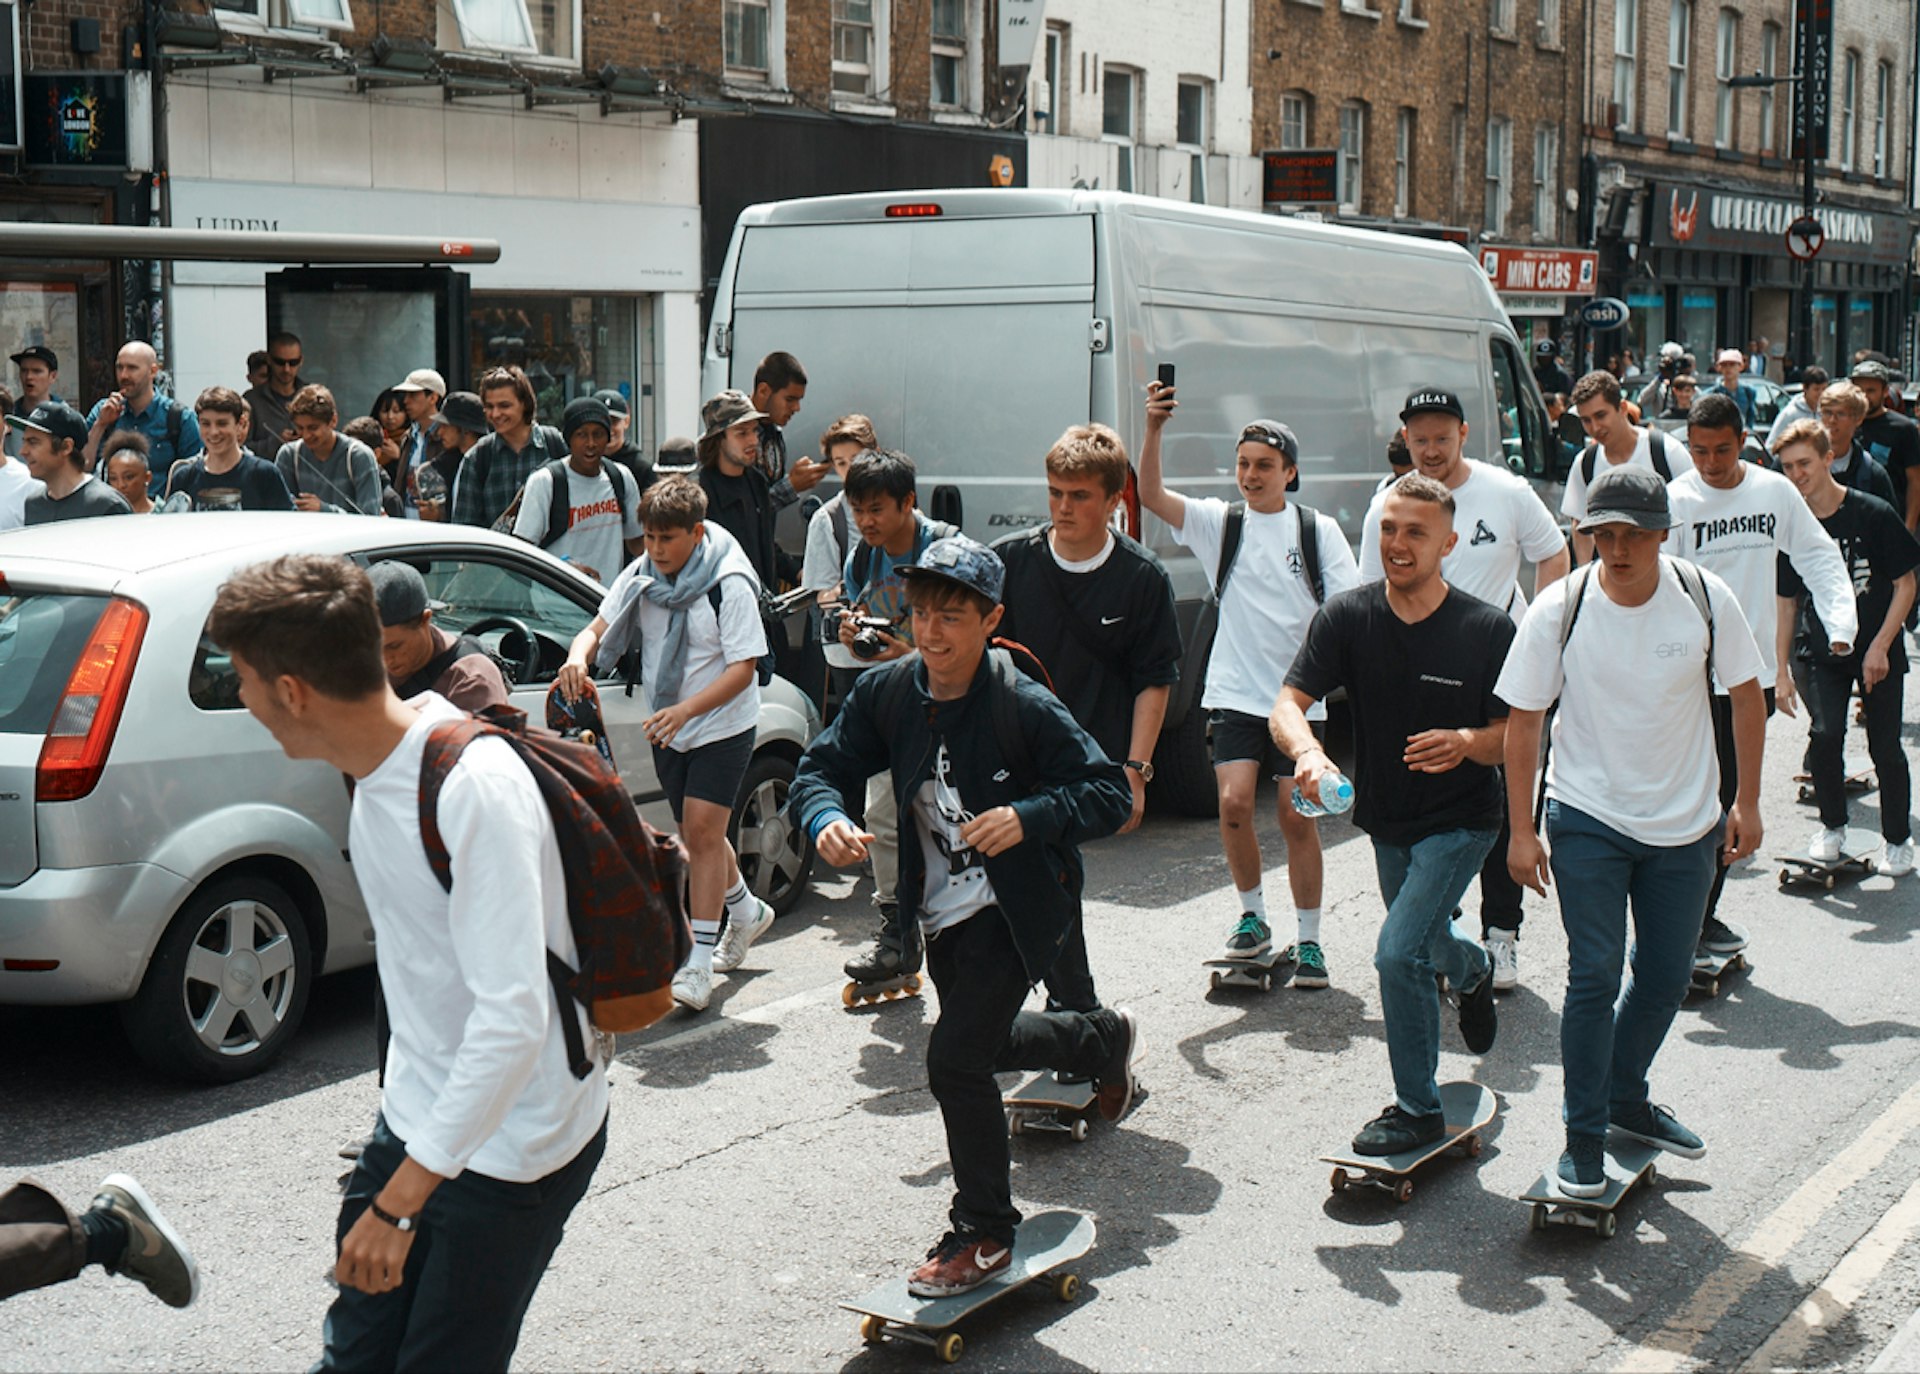 Hundreds of skaters hit the streets of London for Go Skateboarding Day 2015